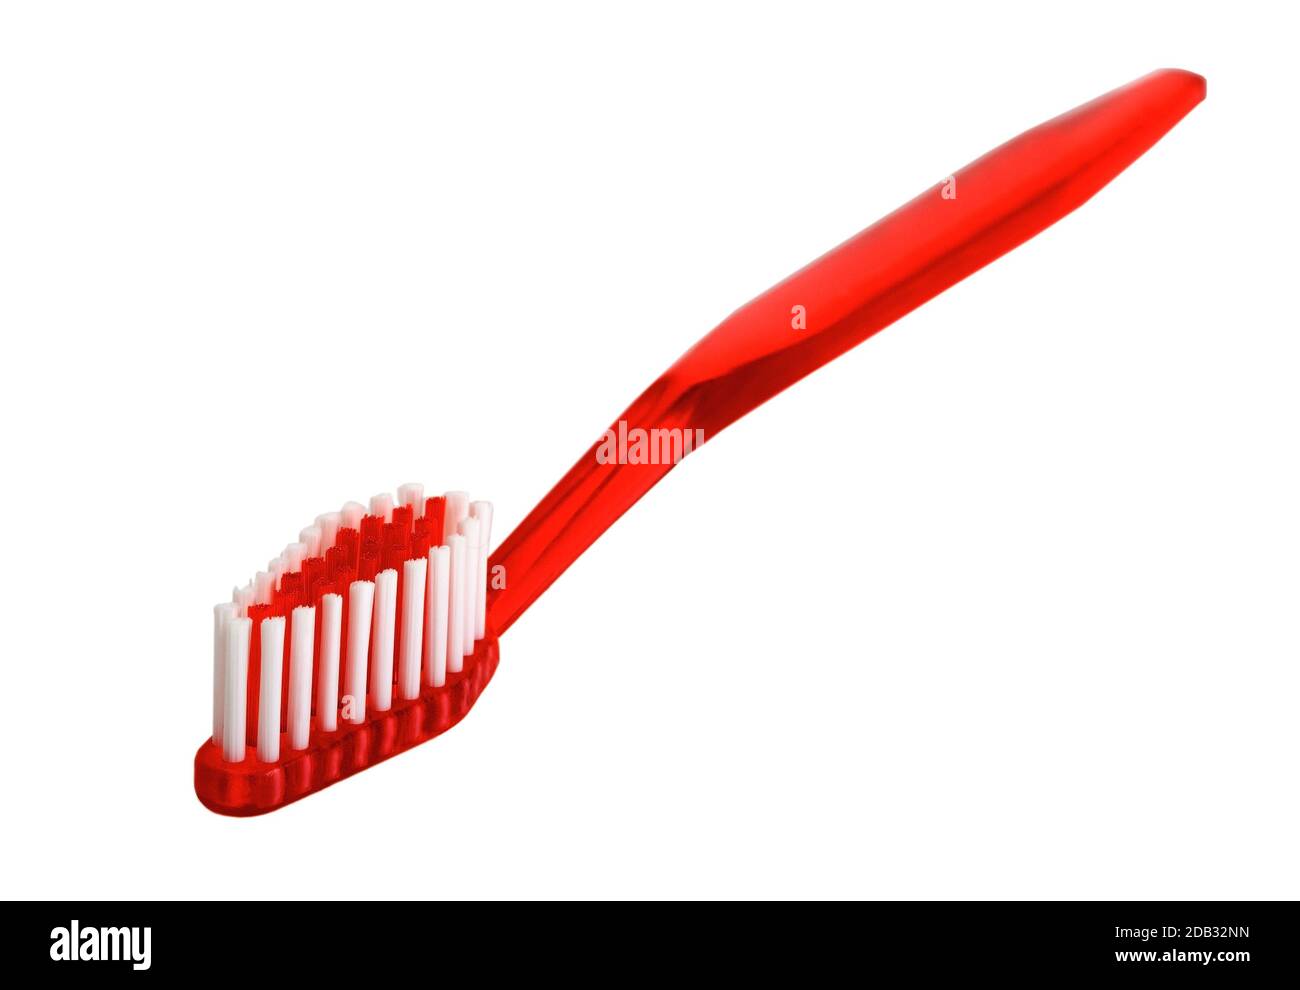 brosse à dents rouge isolée à l'arrière-plan Banque D'Images